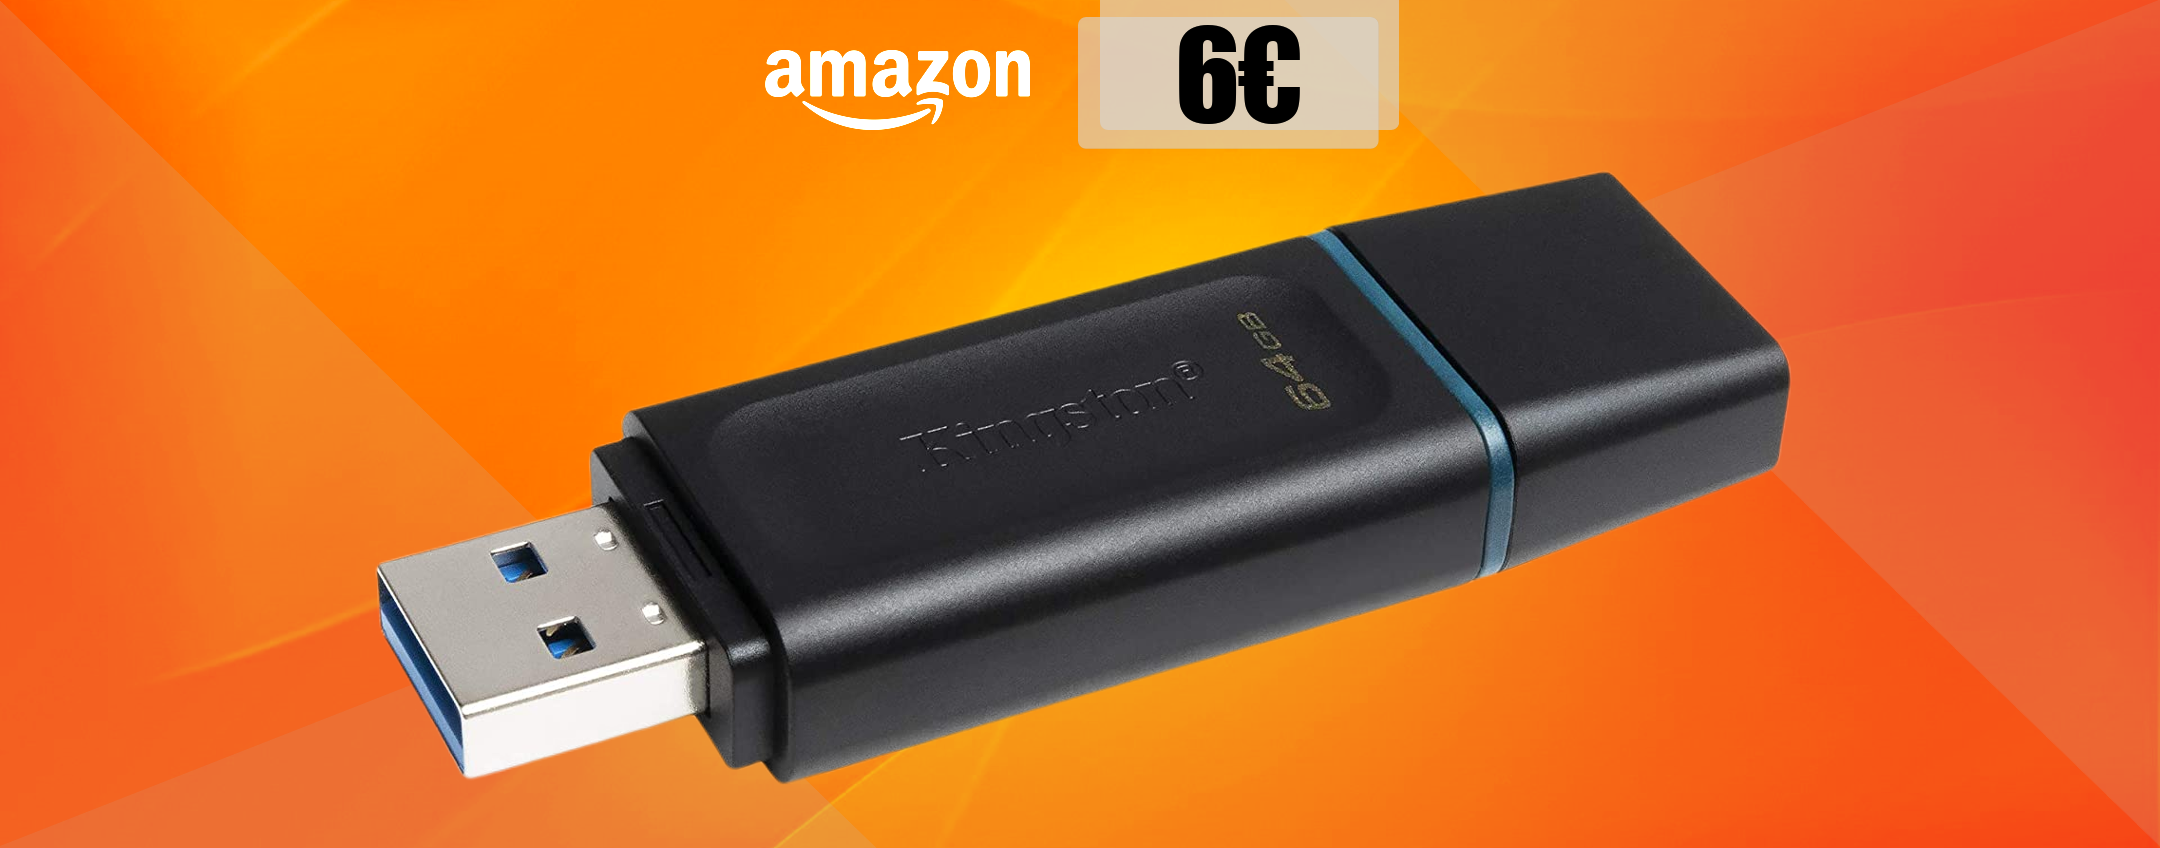 Chiavetta USB 64GB, resistente e super veloce: bastano appena 6€